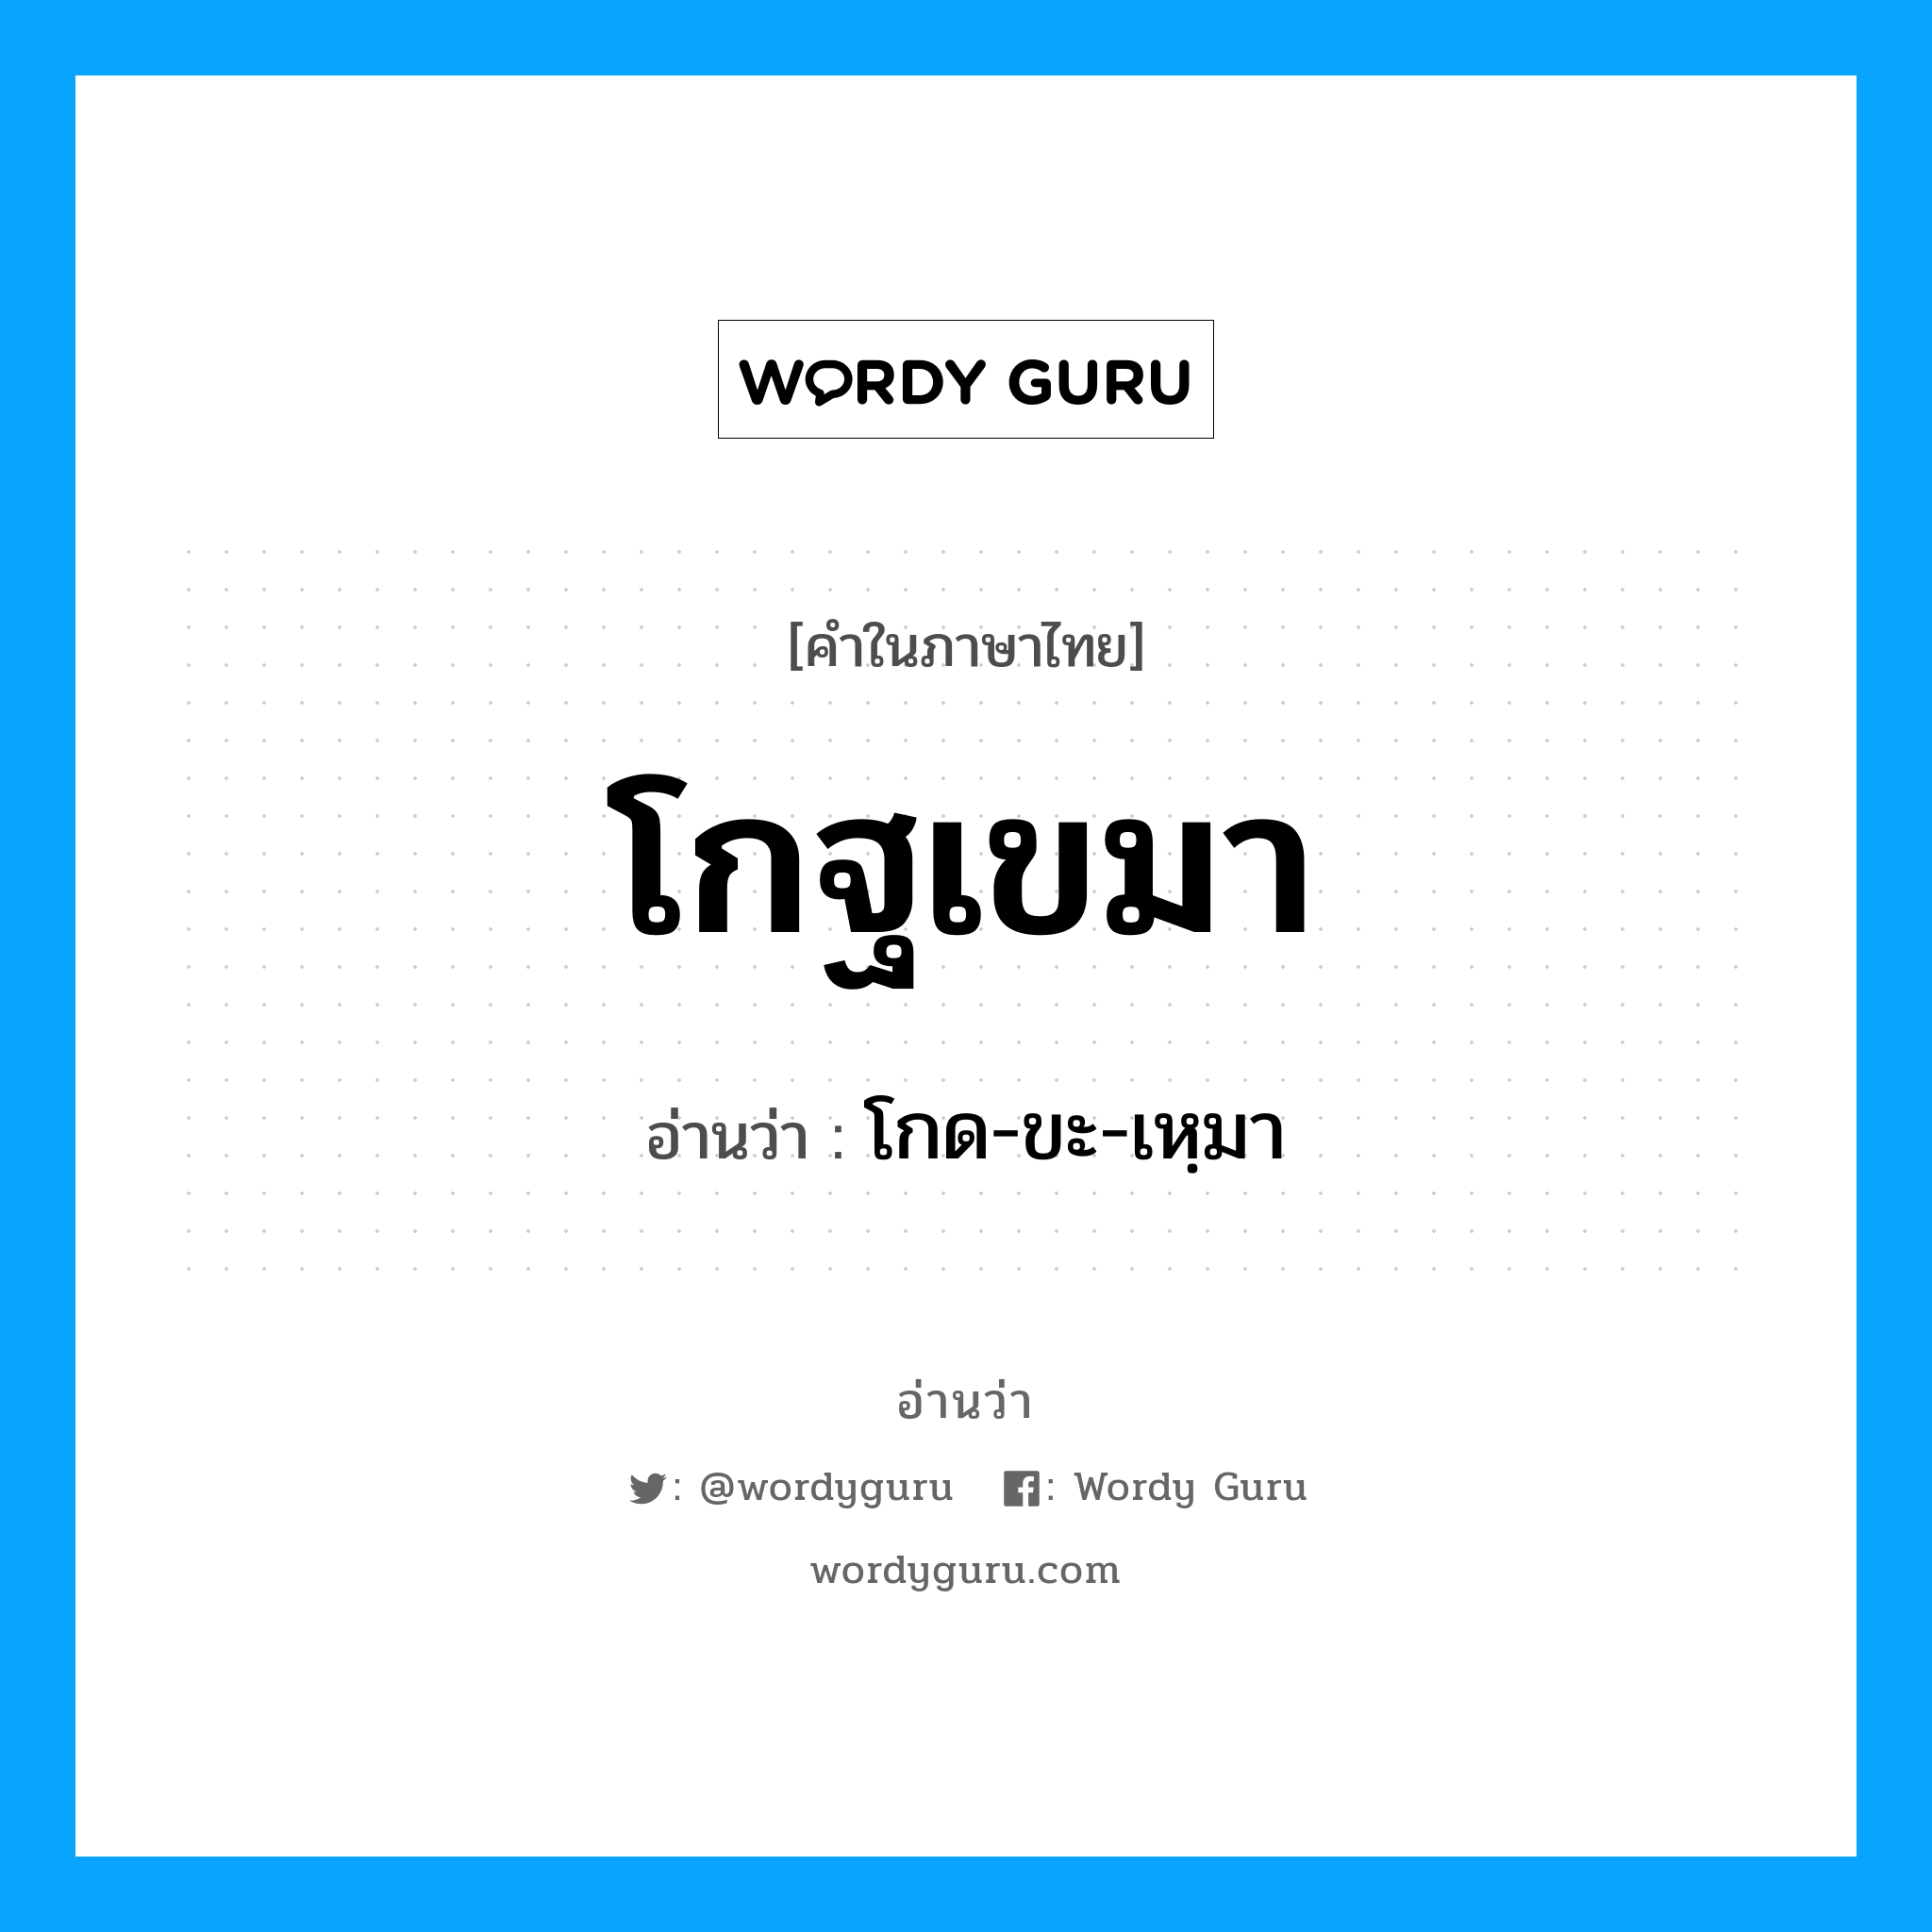 โกด-ขะ-เหฺมา เป็นคำอ่านของคำไหน?, คำในภาษาไทย โกด-ขะ-เหฺมา อ่านว่า โกฐเขมา